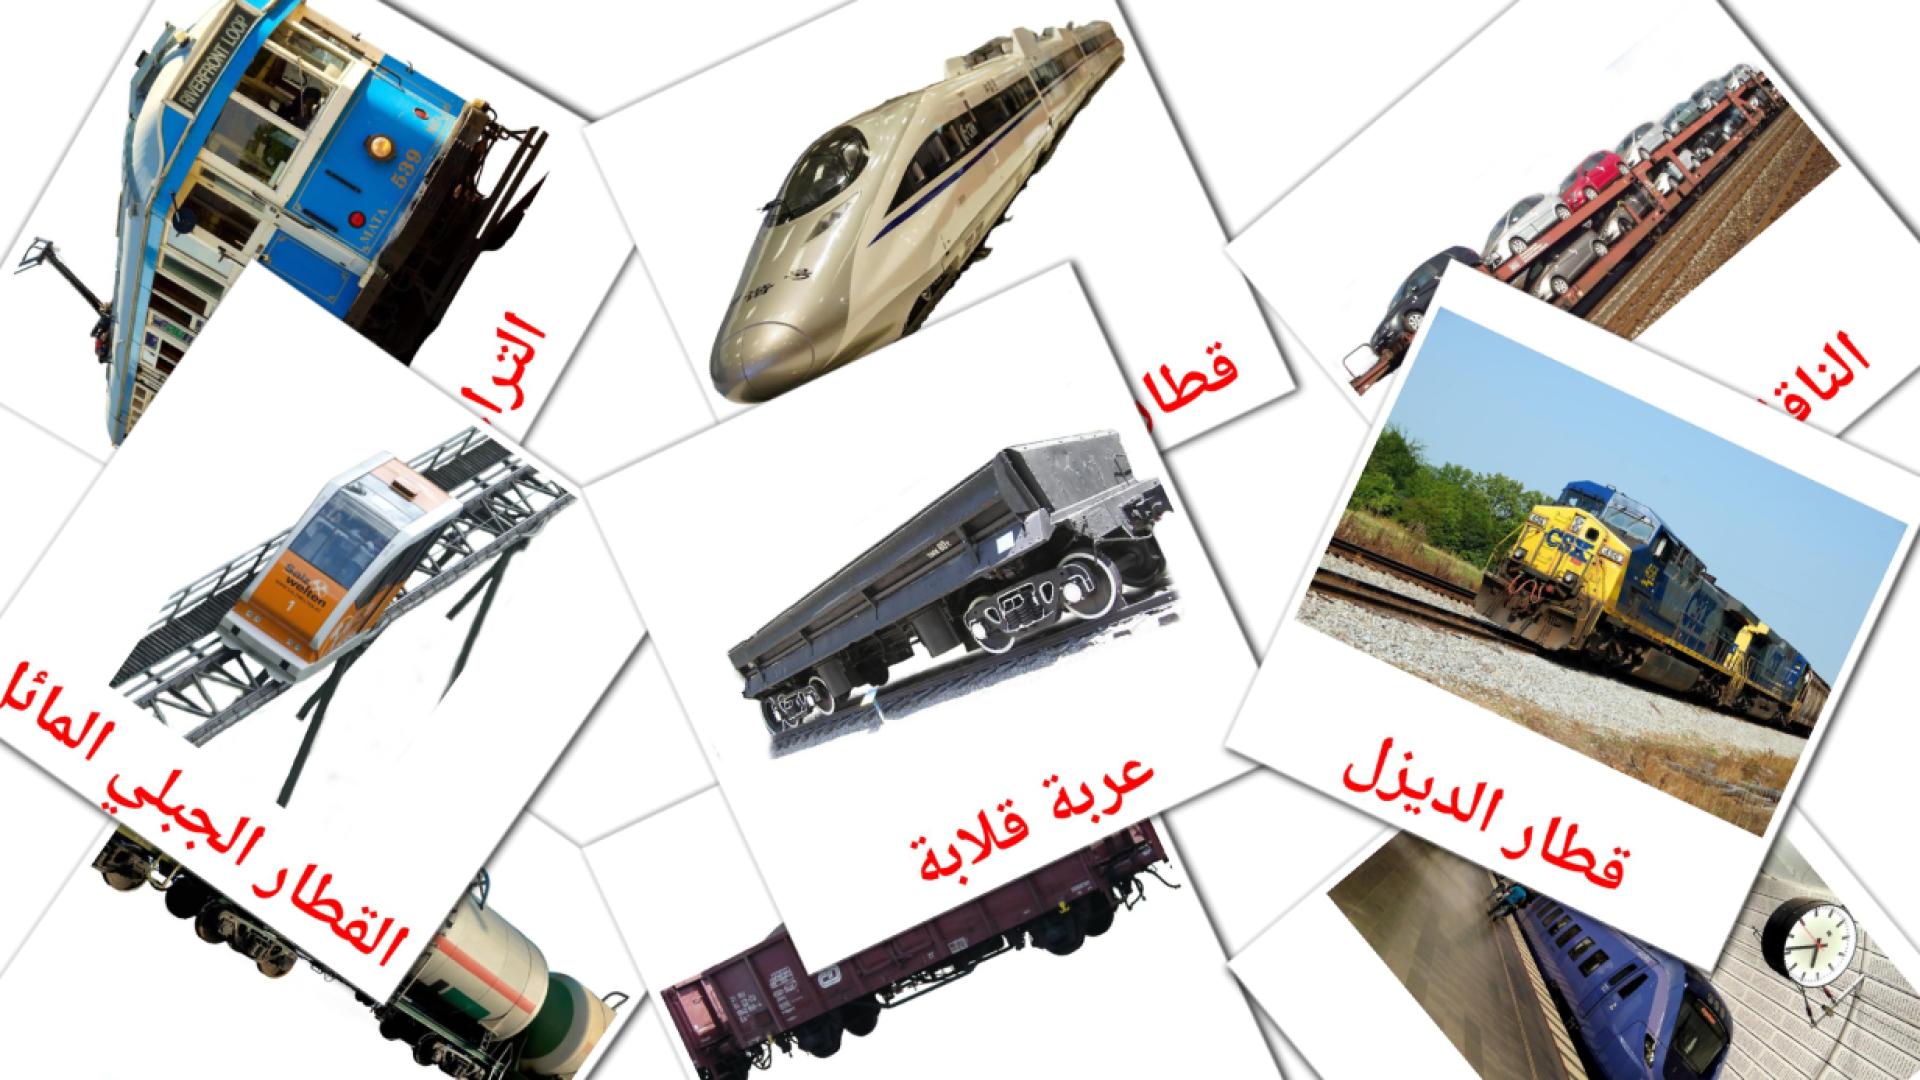 Schienenfahrzeug - Arabisch Vokabelkarten